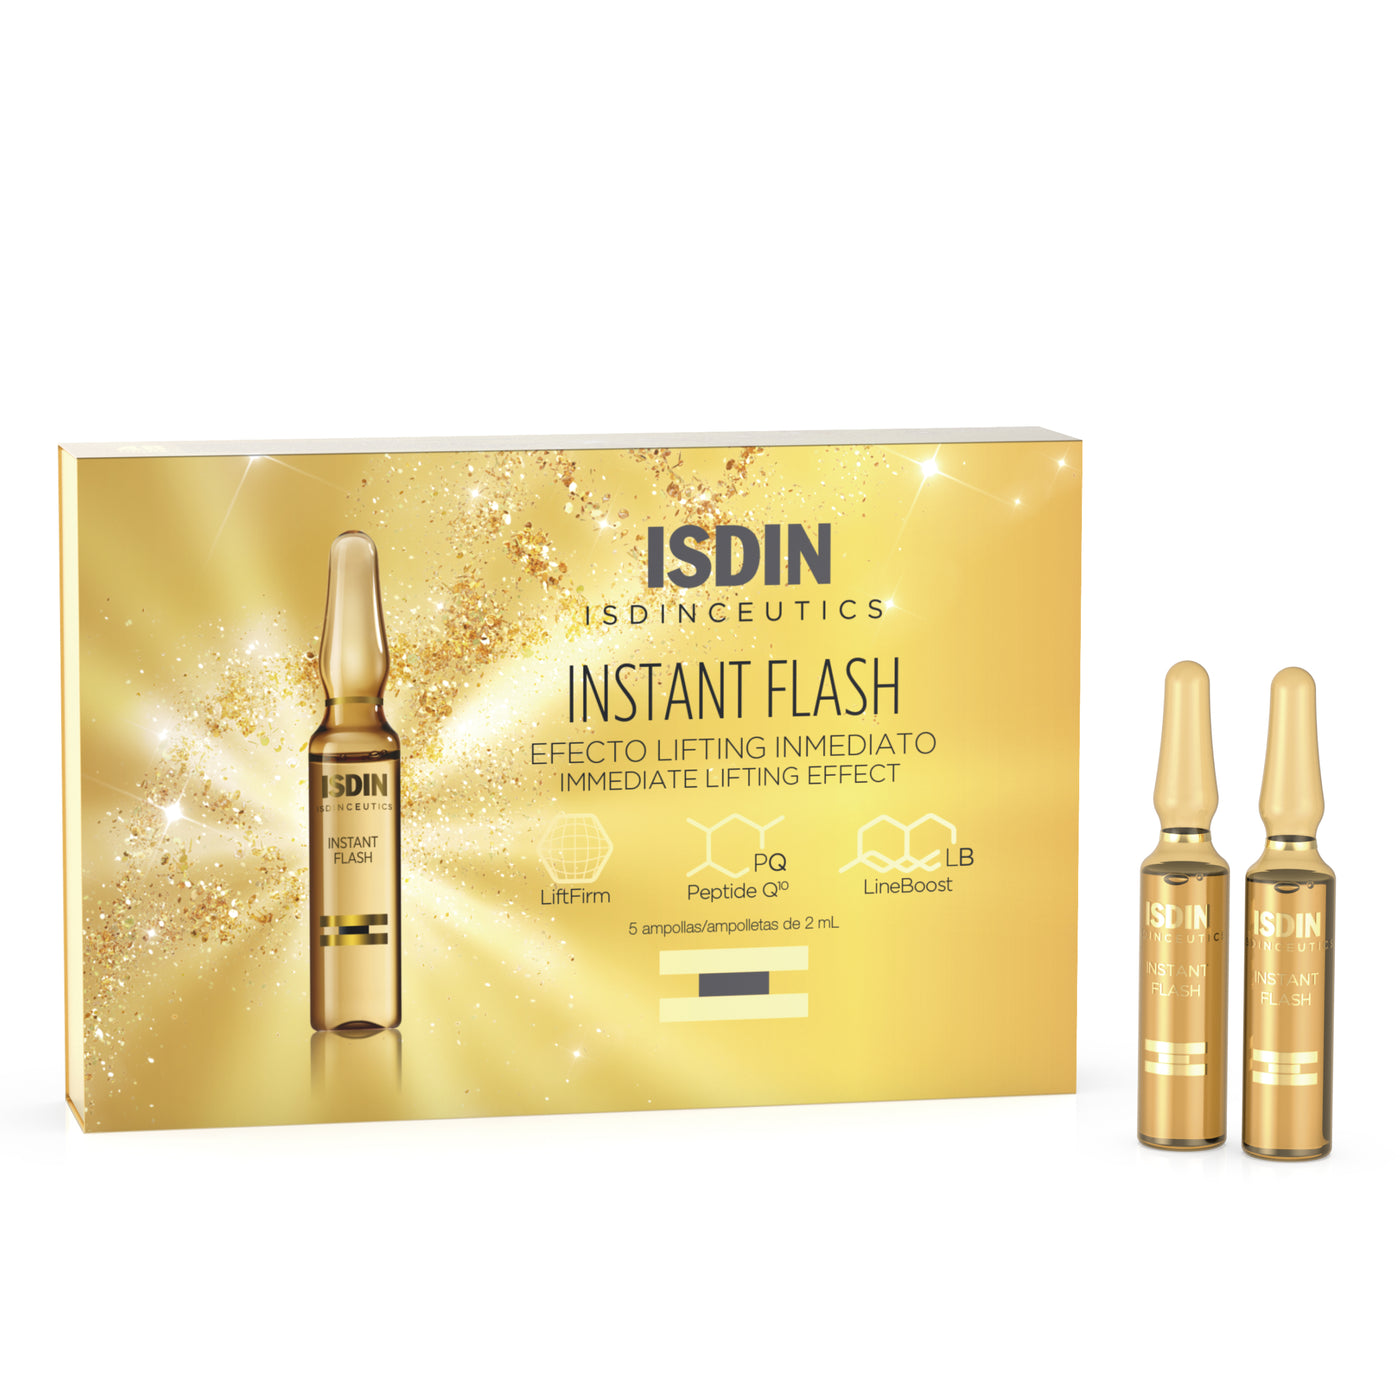 Instant Flash serum